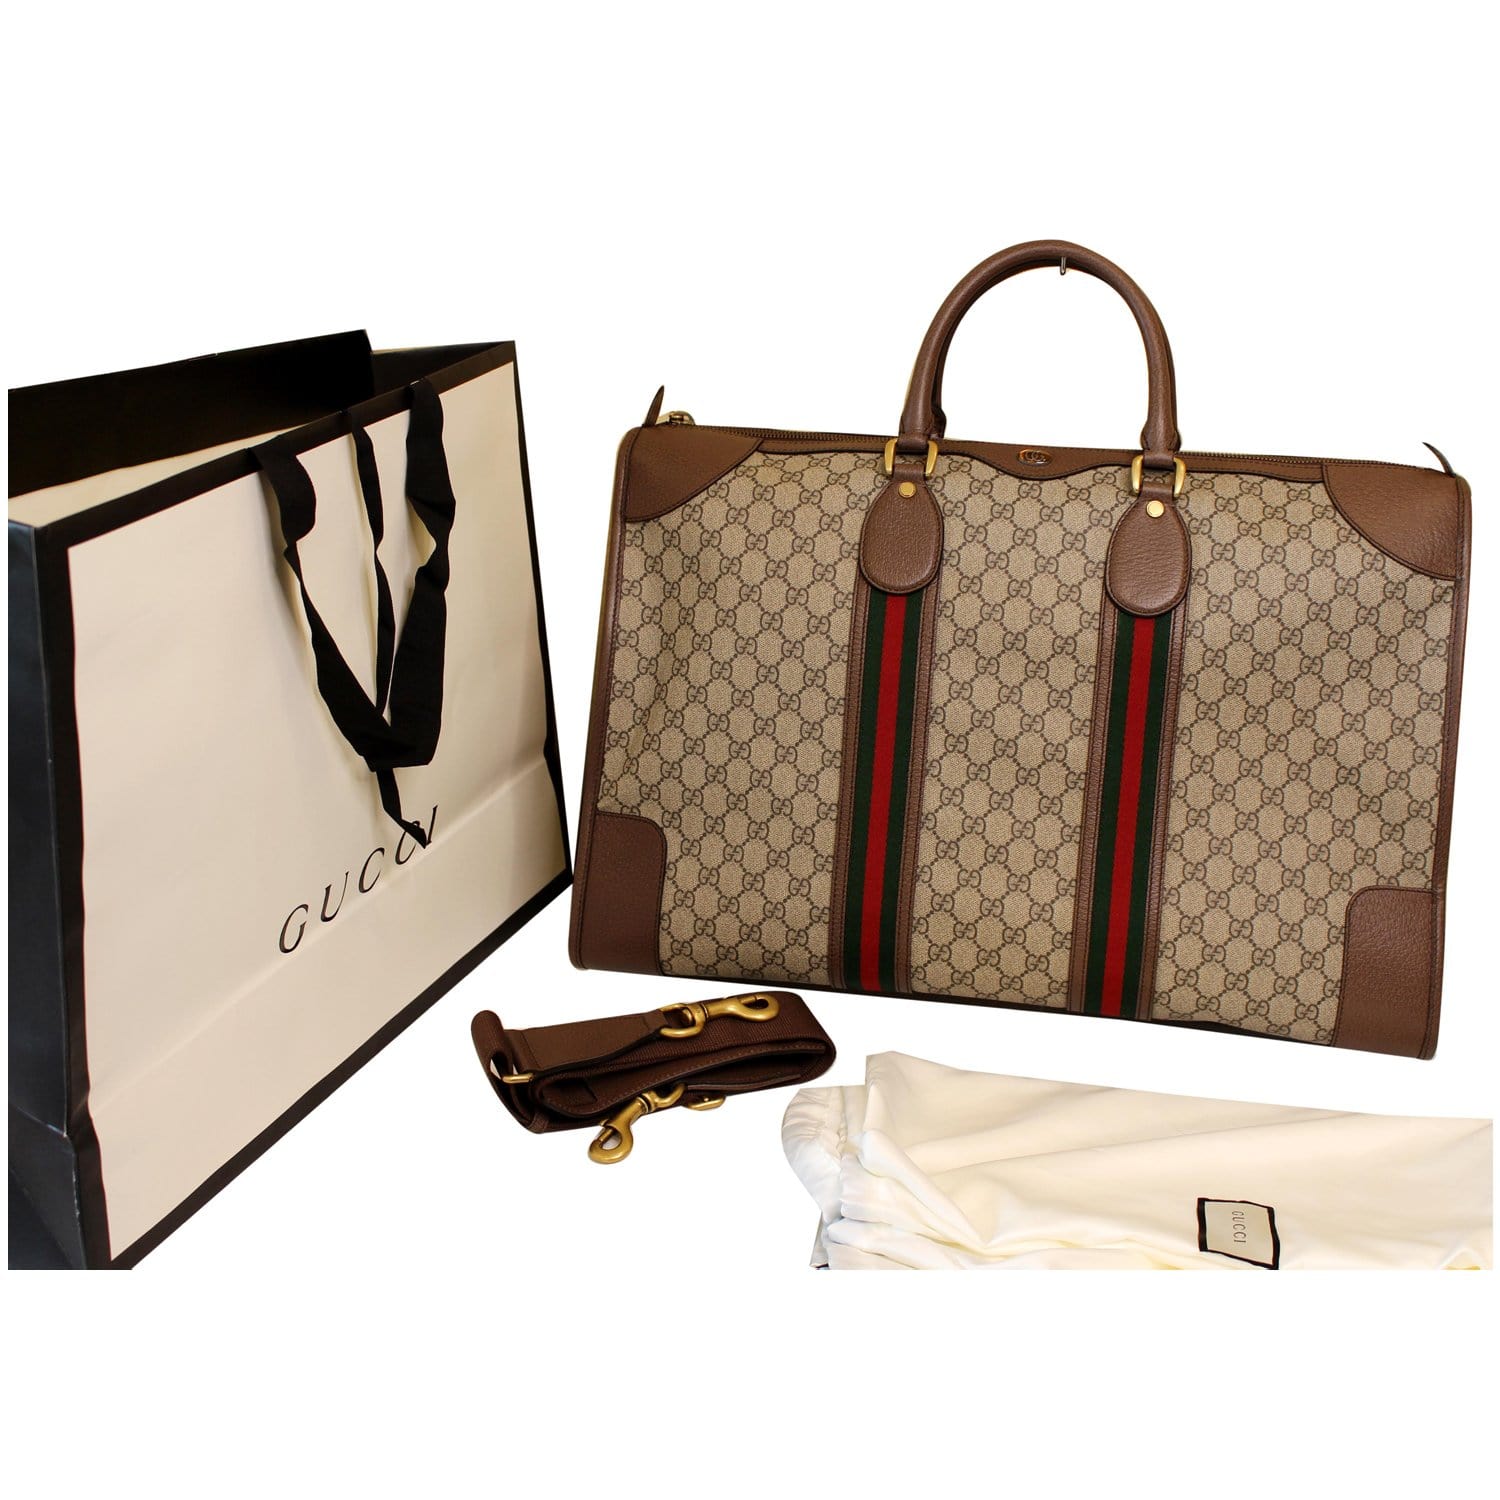 Gucci Brown GG Supreme Canvas Duffle Bag Gucci